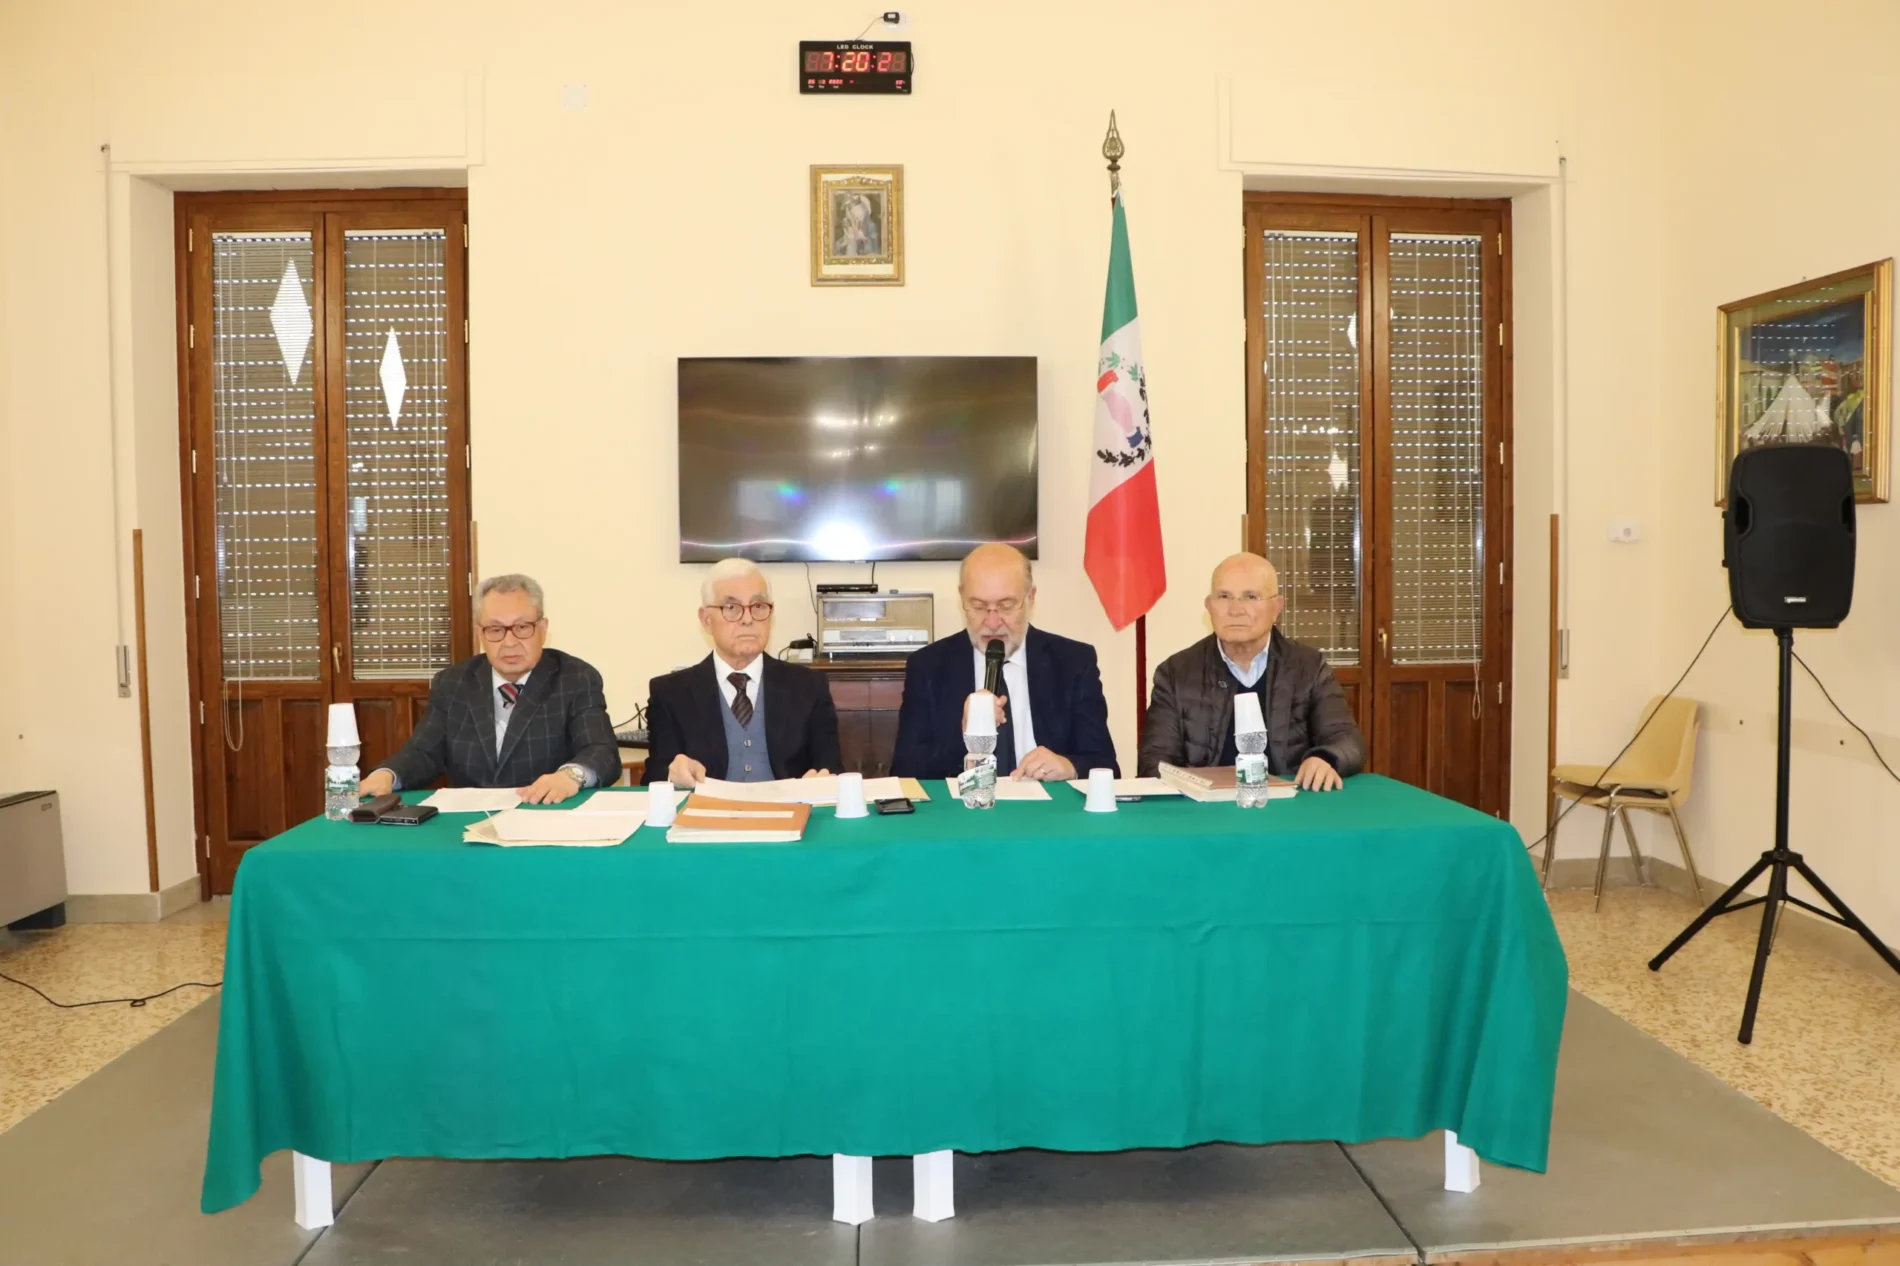 PIETRAPERZIA. Quattro nuovi soci onorari alla società operaia “Regina Margherita” di piazza Vittorio Emanuele.